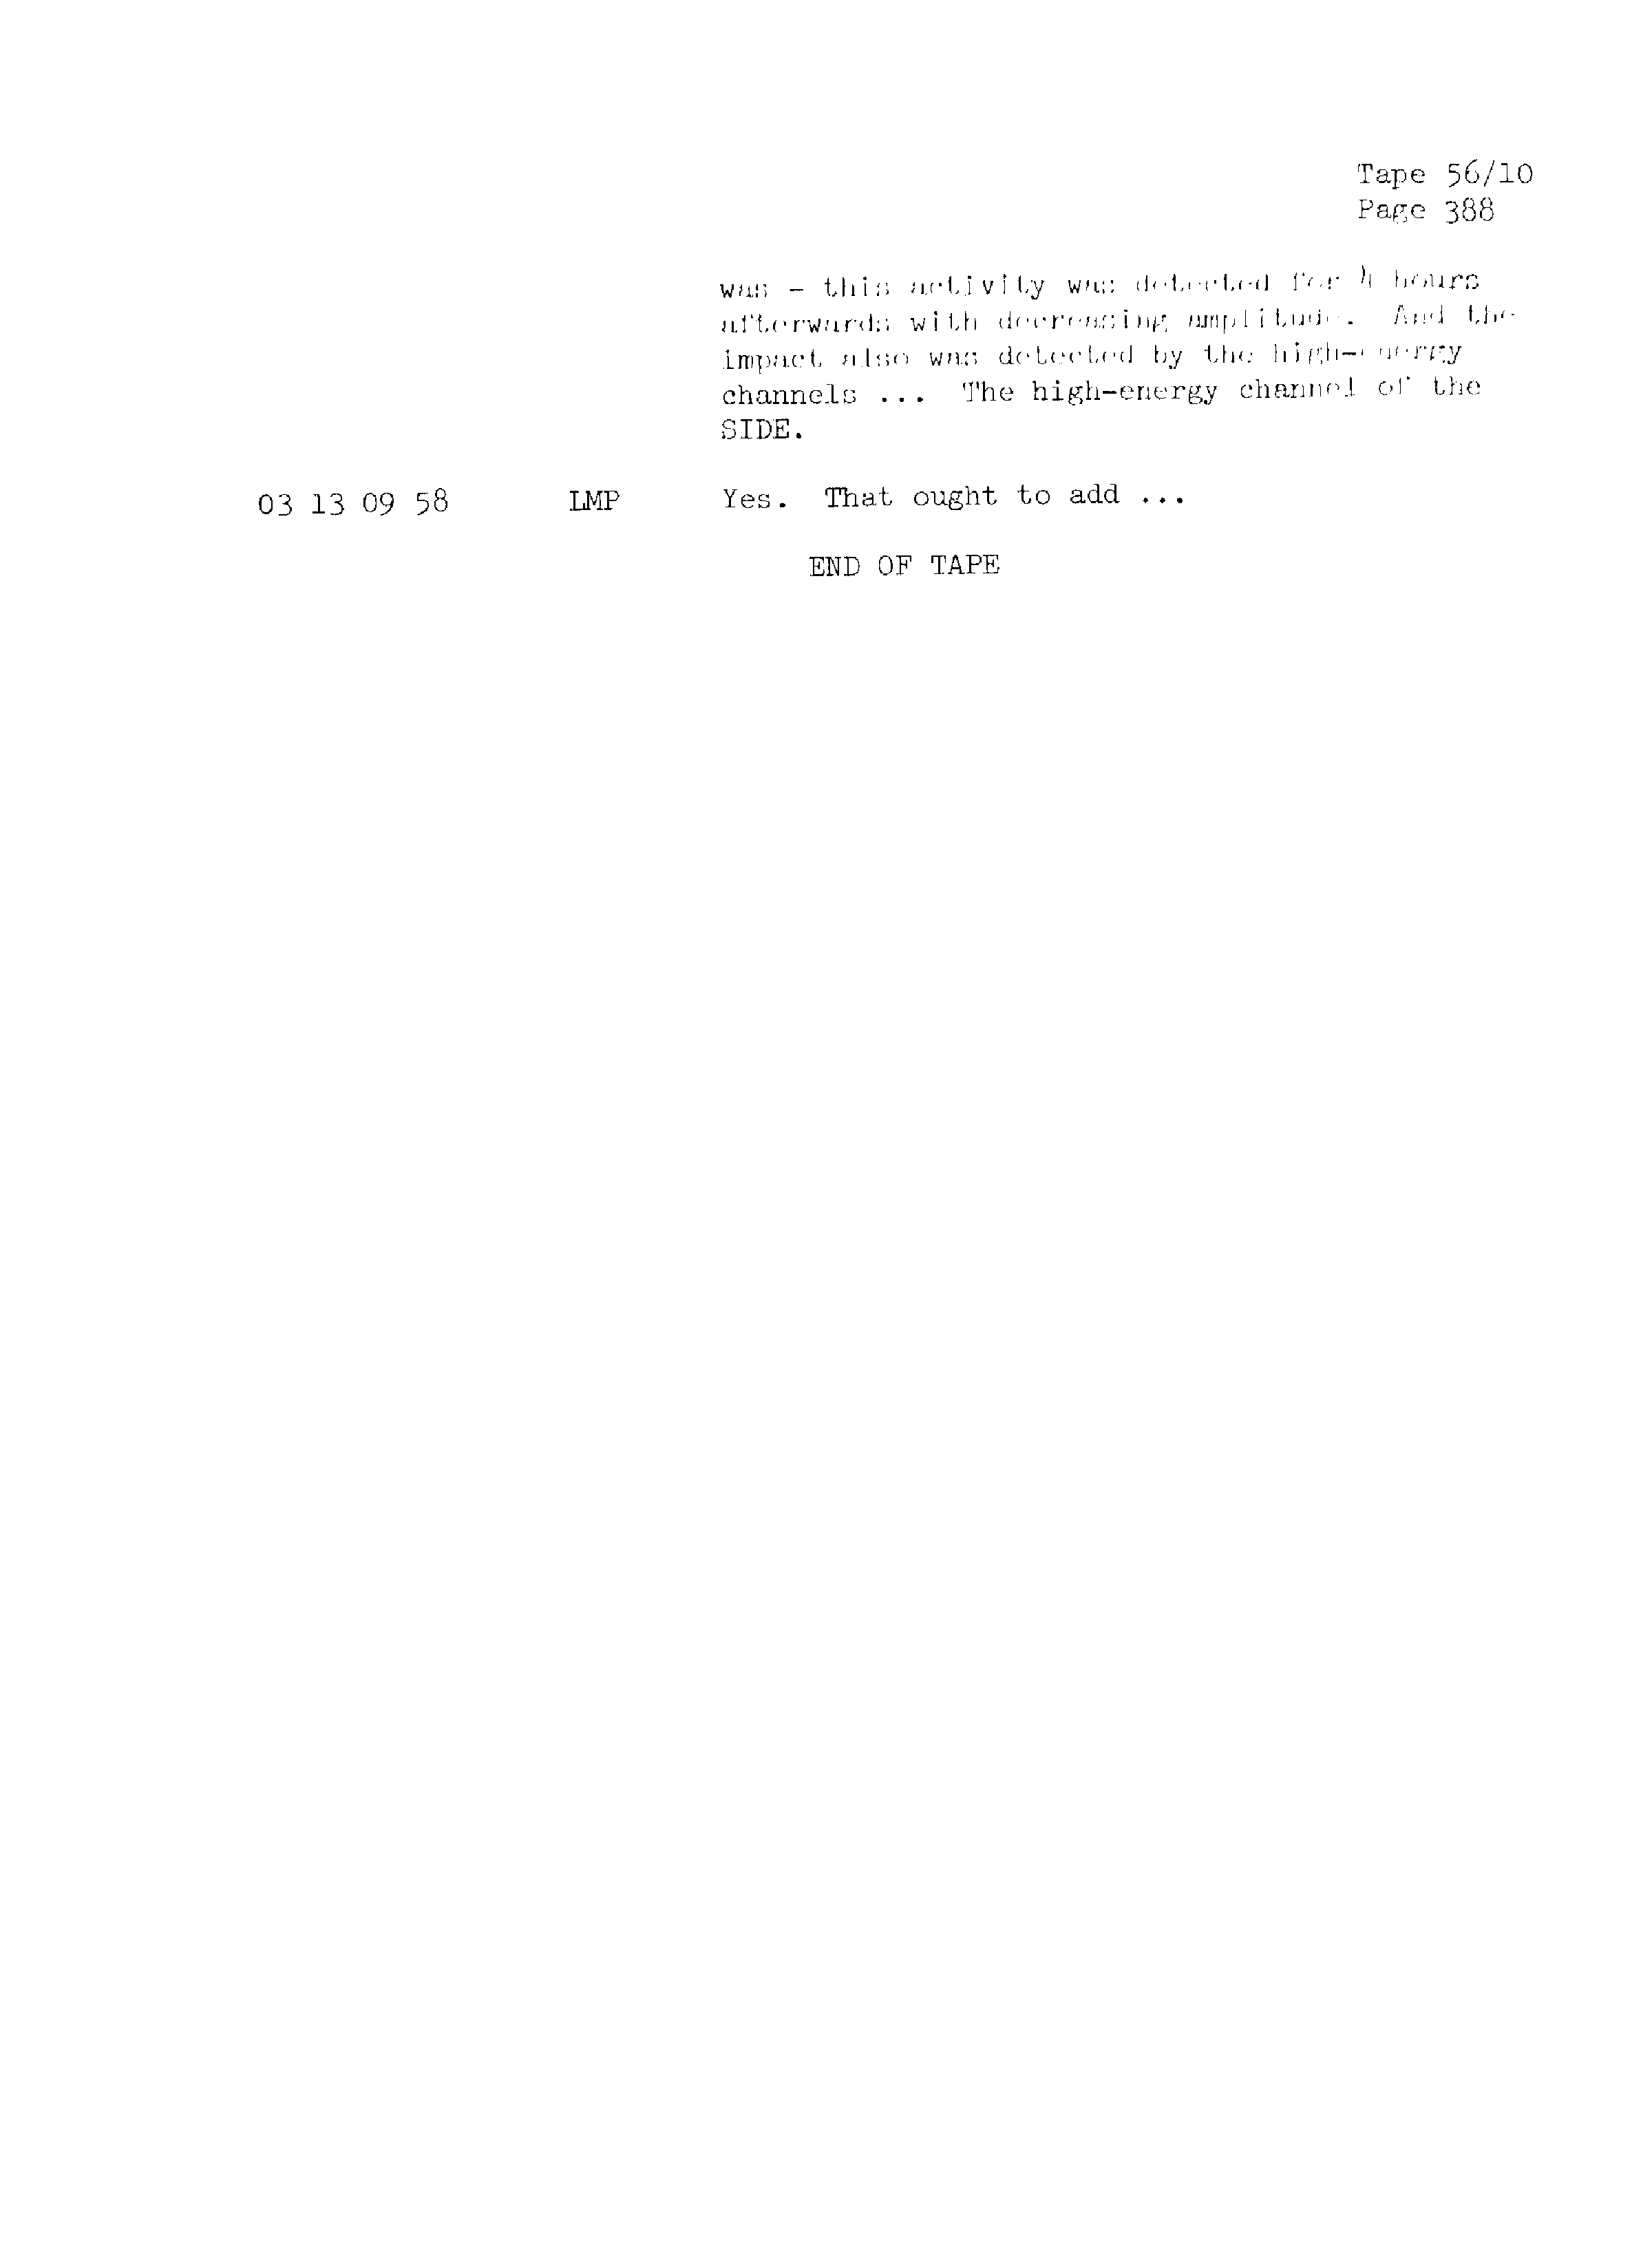 Page 395 of Apollo 13’s original transcript